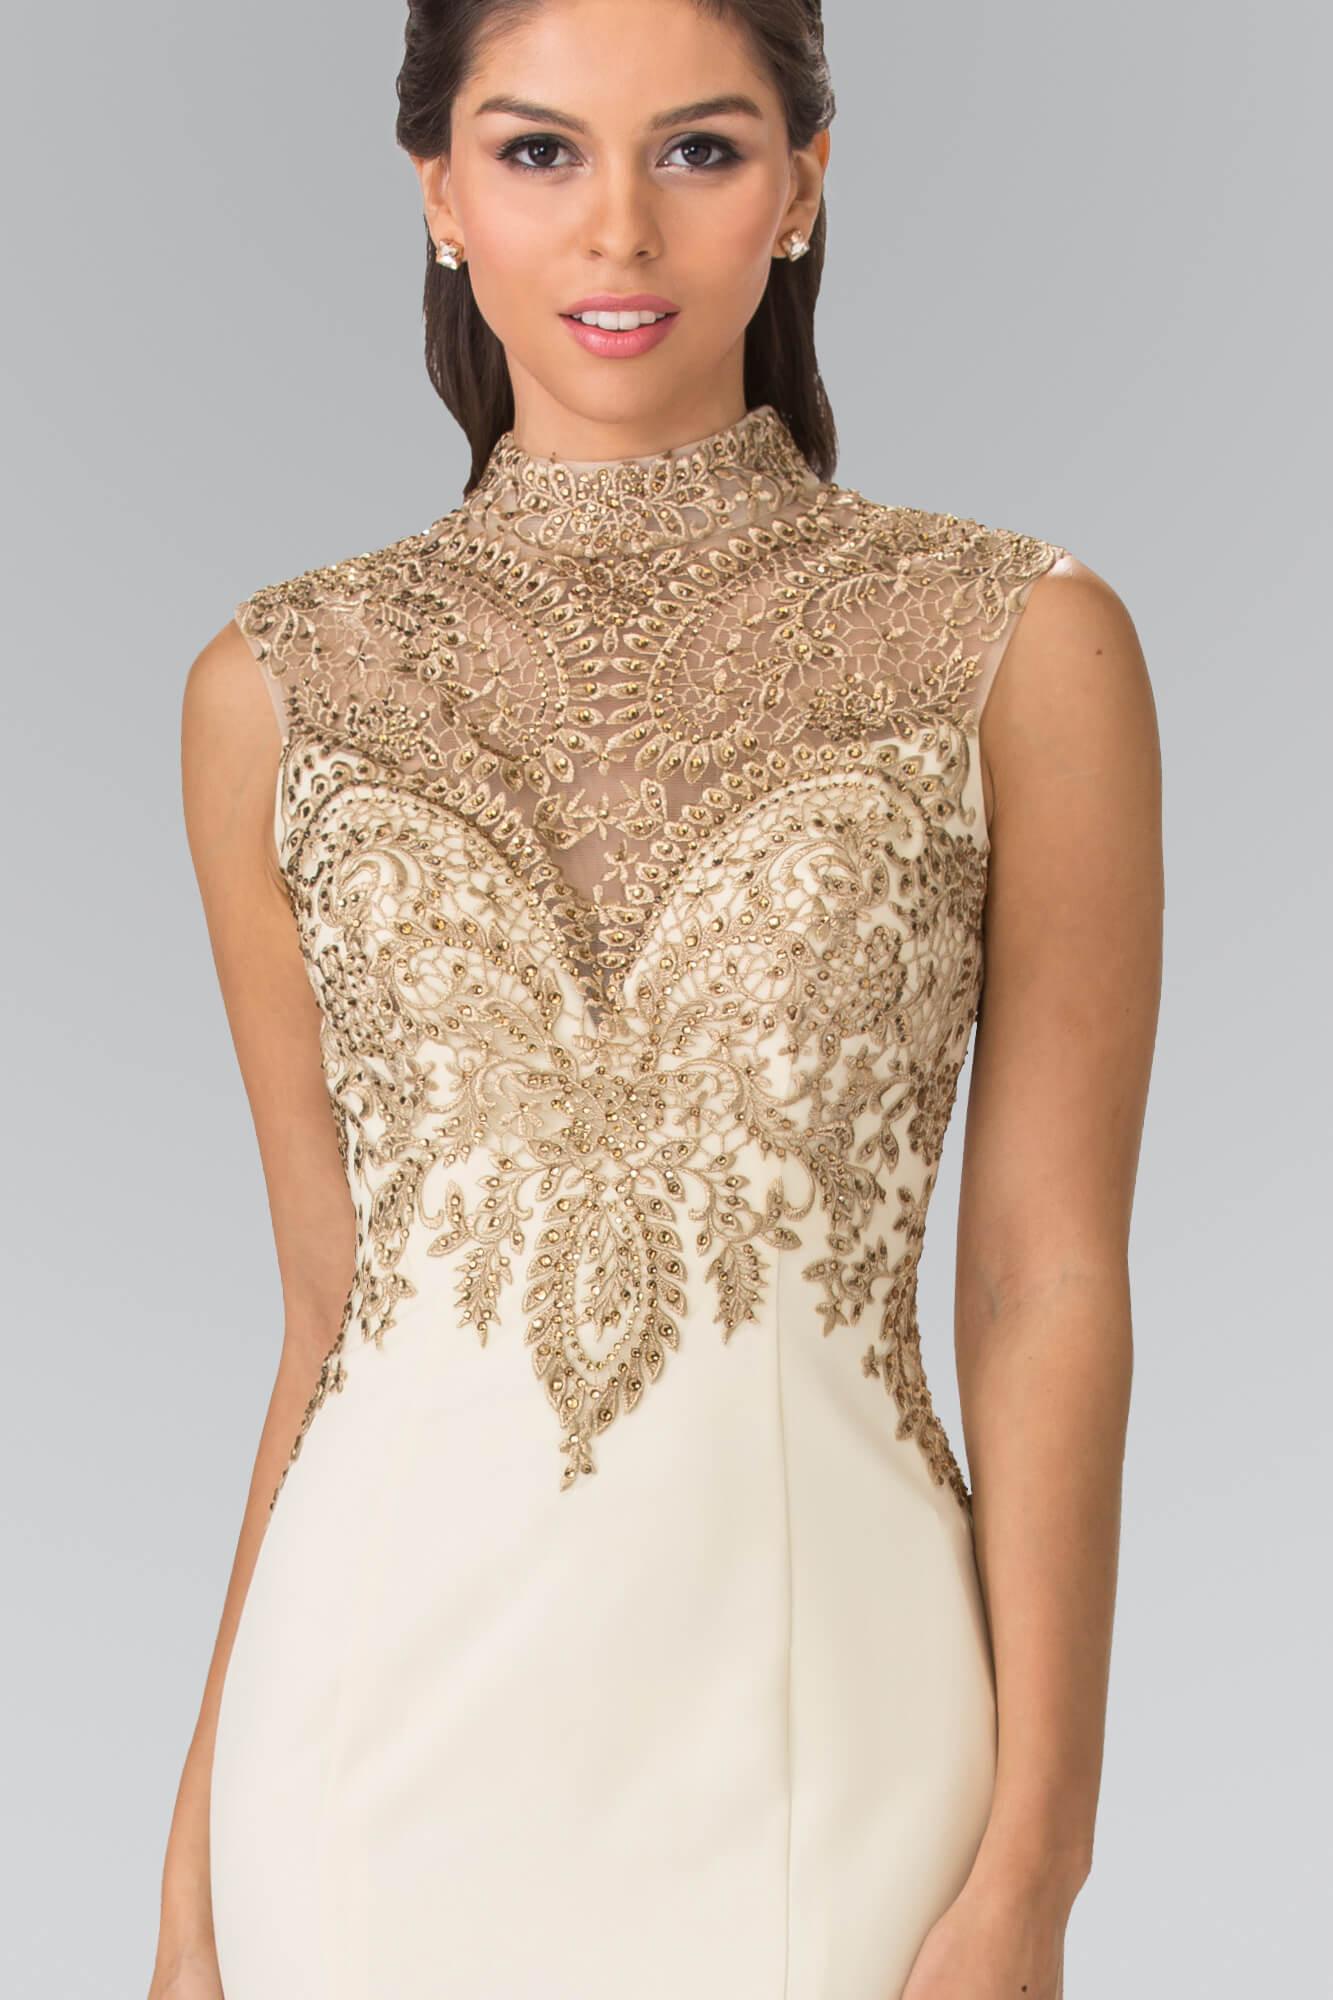 Prom Long Formal Dress Evening Gown - The Dress Outlet Elizabeth K